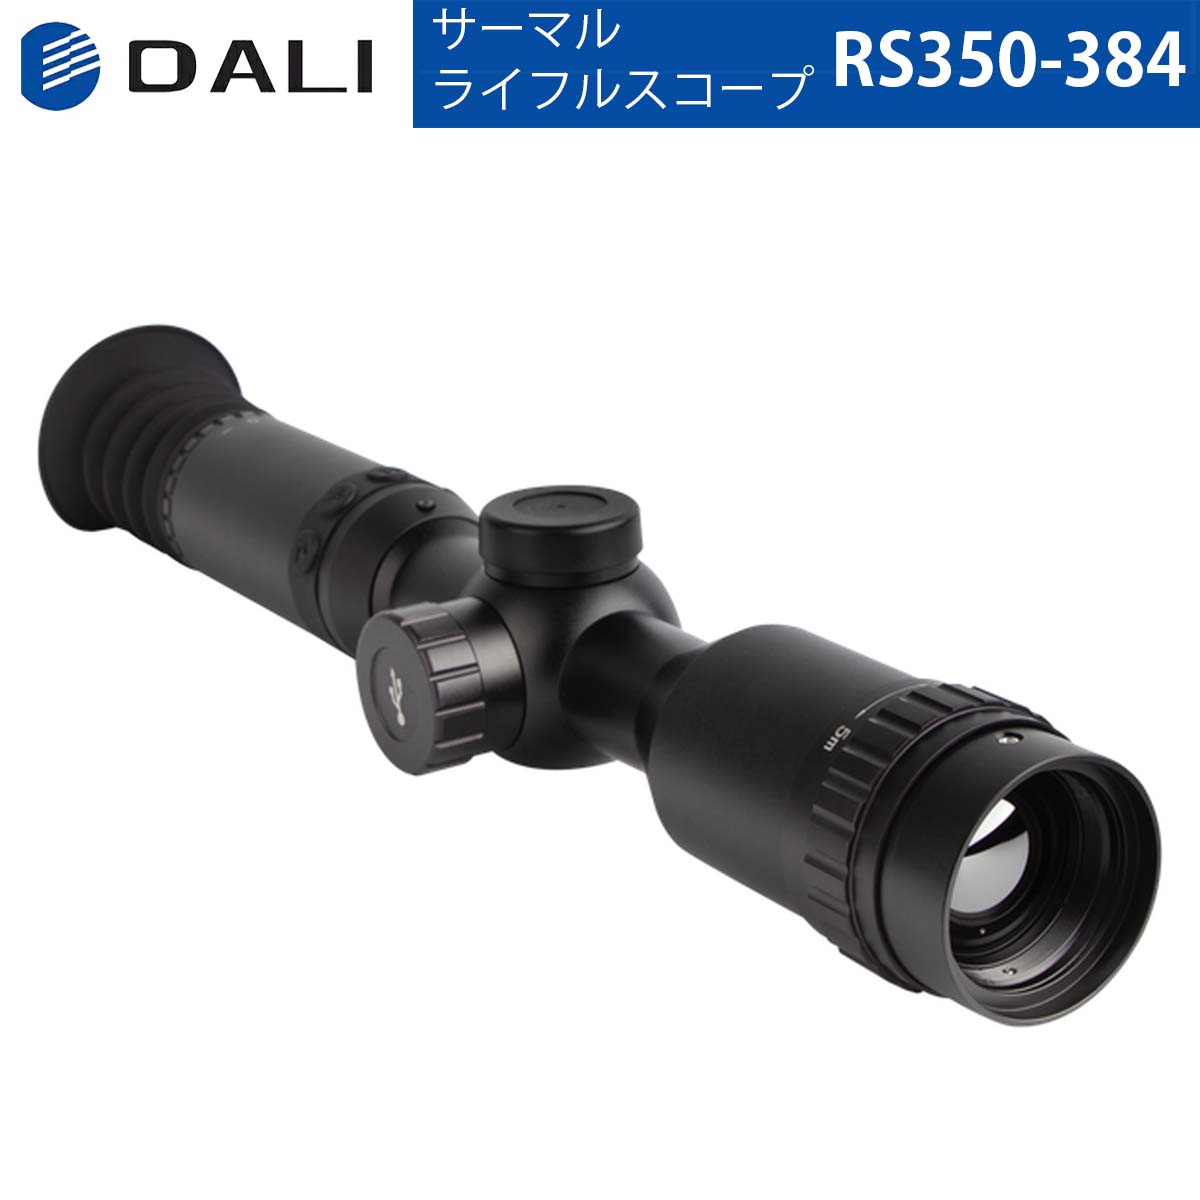 DALI【メーカー正規品】サーマルライフルスコープ RS3シリーズ RS350-384 1280×960大画面 レンズ50mm WIFI画像送信機…